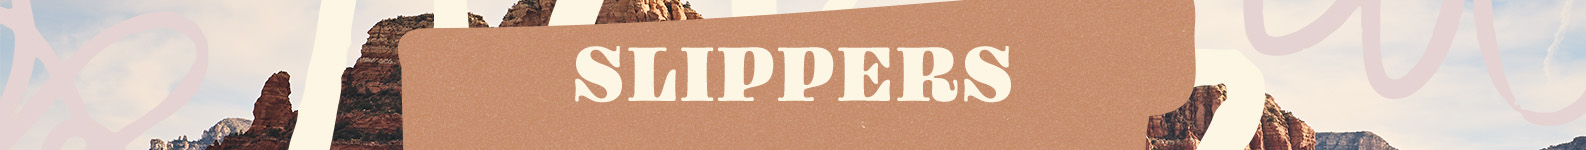 Slippers brand header image